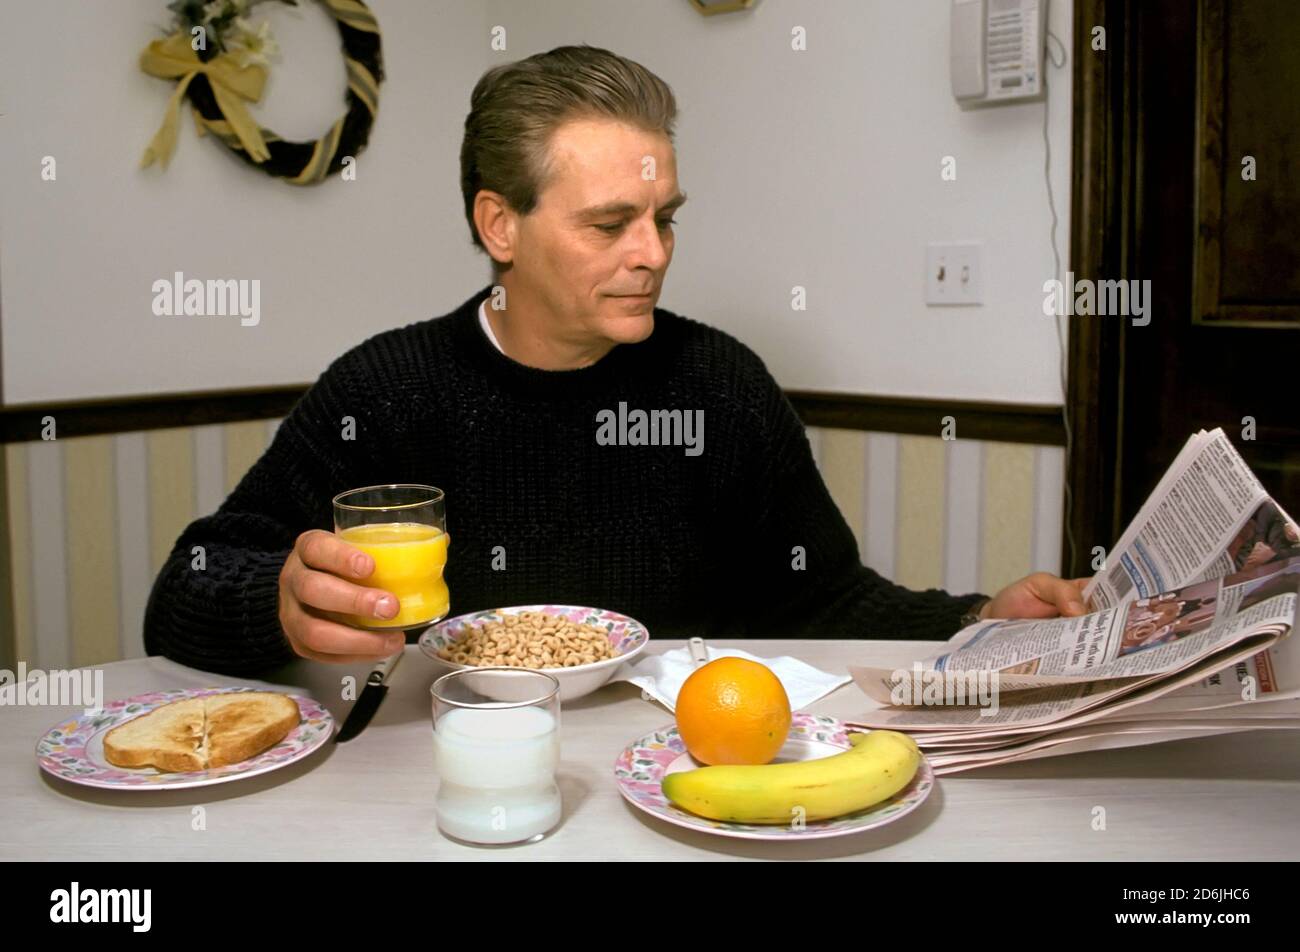 L'homme adulte mange un petit-déjeuner sain comprenant des fruits, des céréales entières, du jus et du lait à faible teneur en matières grasses lors de la lecture du journal Banque D'Images